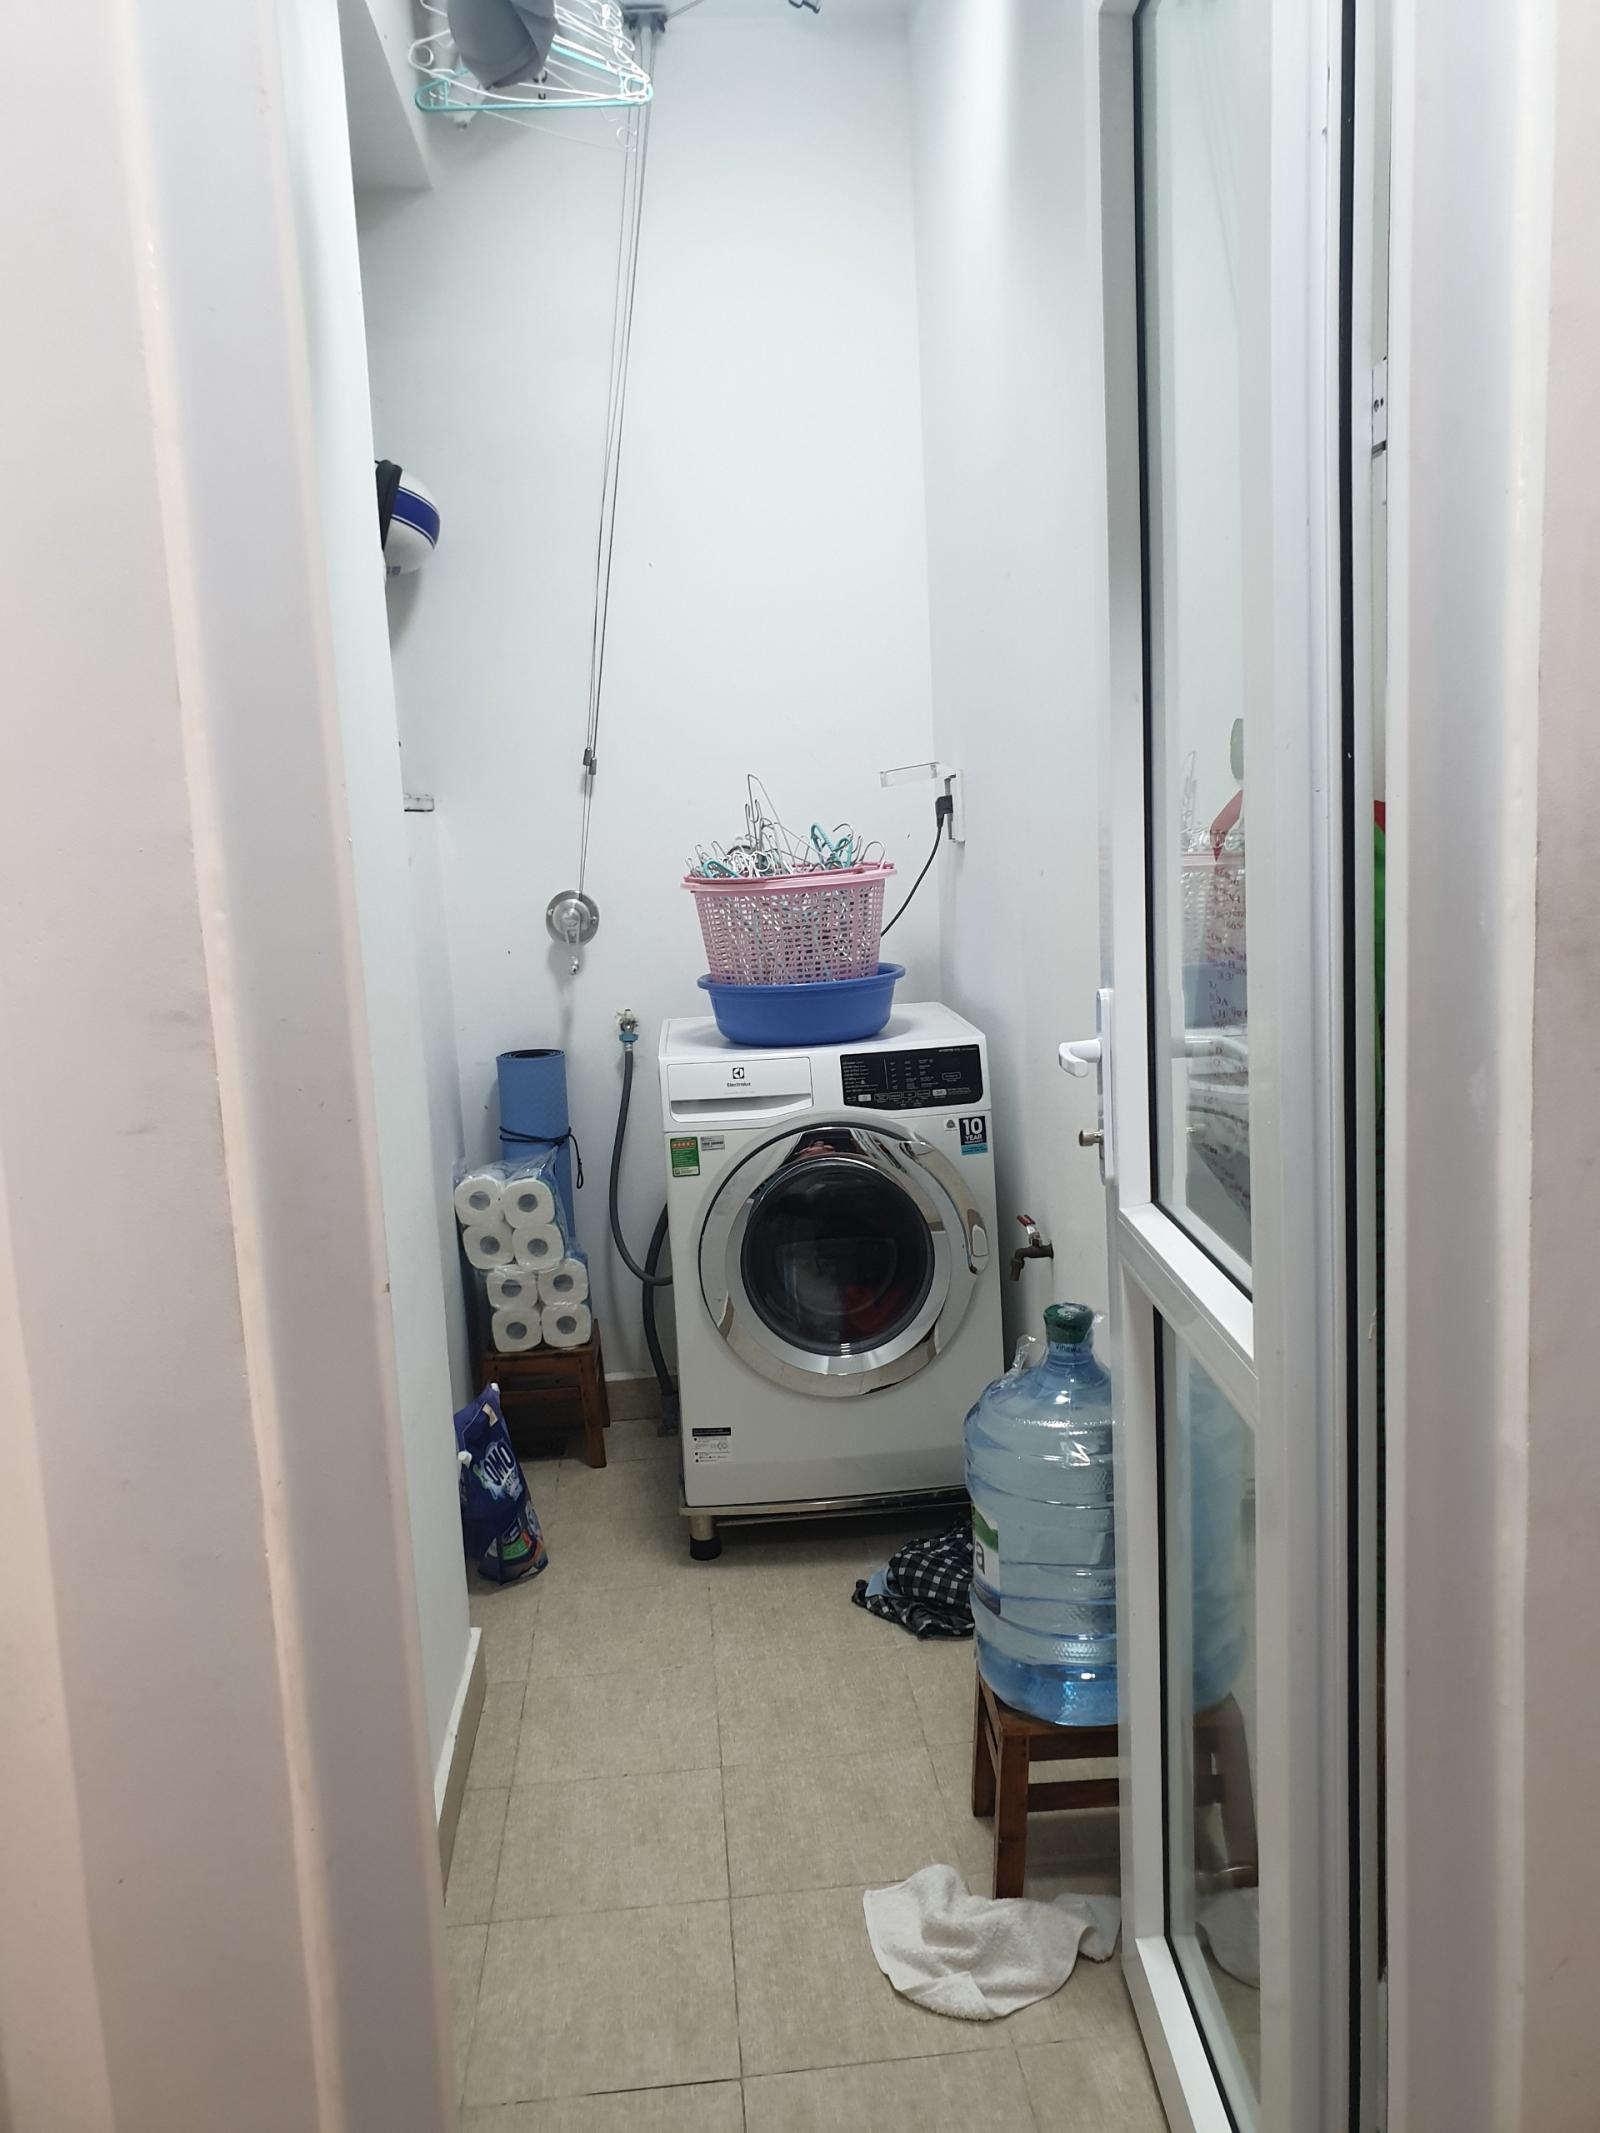 Chỉ 9tr! Căn hộ Tara mới tinh 2PN/82m2 có máy giặt tủ lạnh ngay bến xe Q8 gần ĐH Tôn Đức Thắng, K.Tế, ở liền